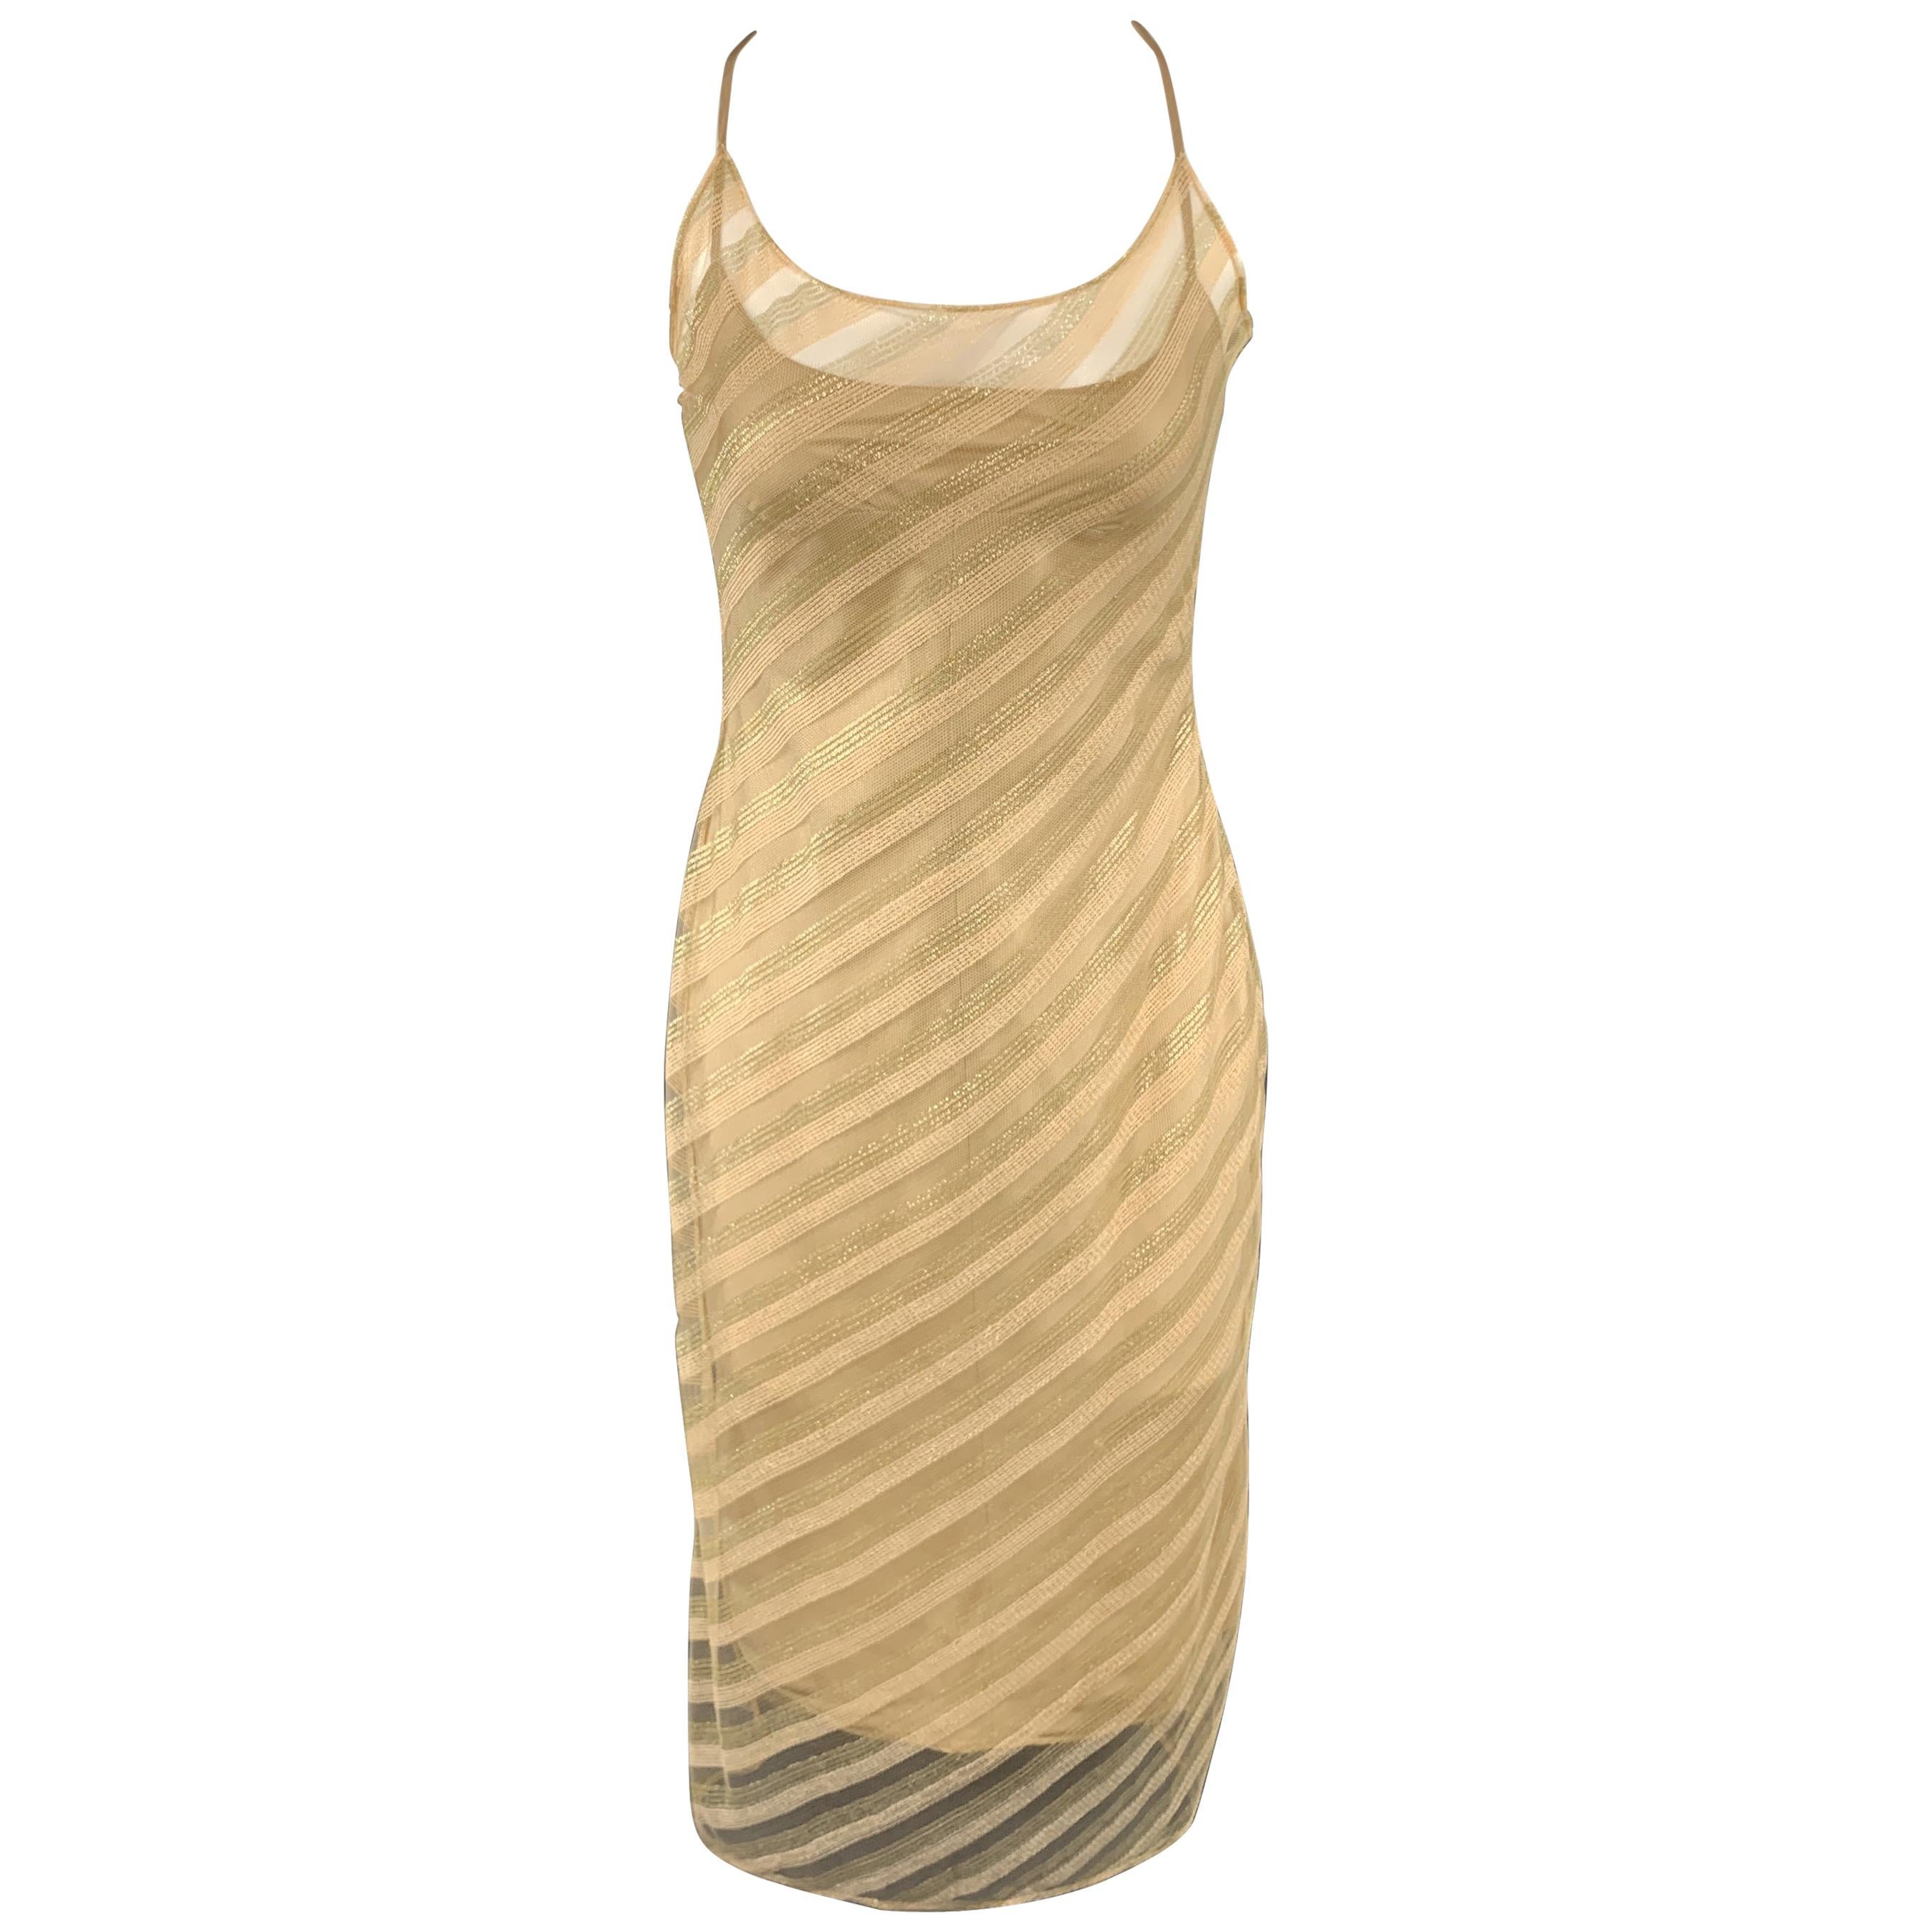 RICHARD TYLER Size 6 Gold Diagonal Striped Mesh Overlay Slip Dress